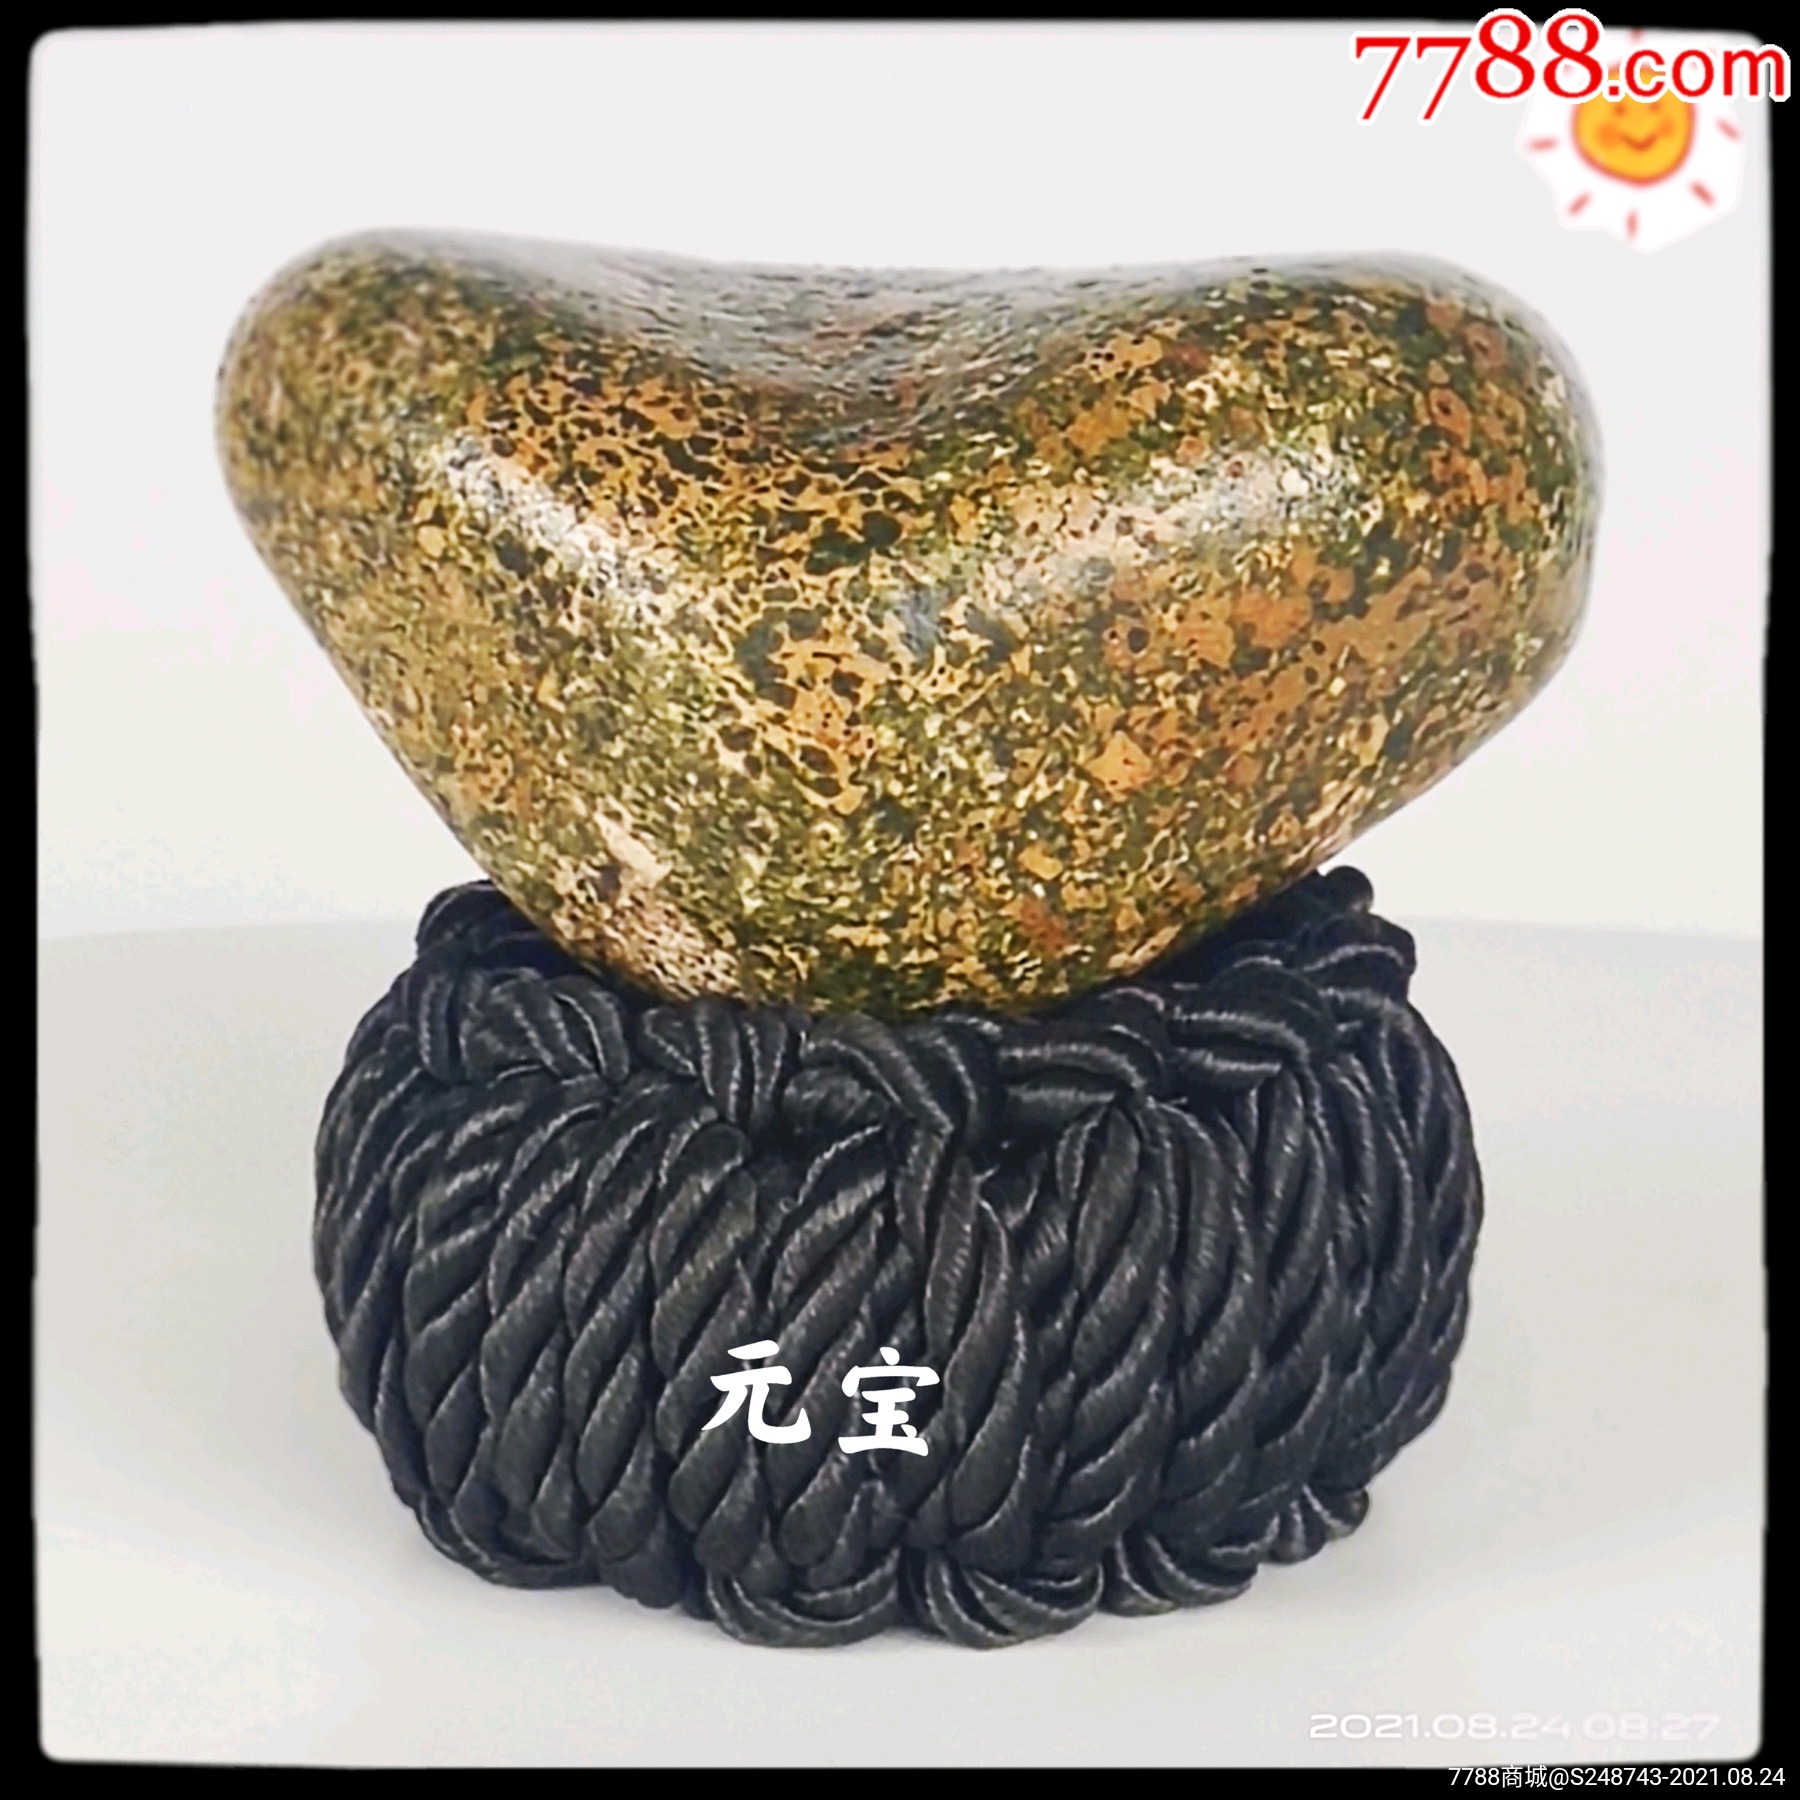 长江三峡造型奇石《元宝》